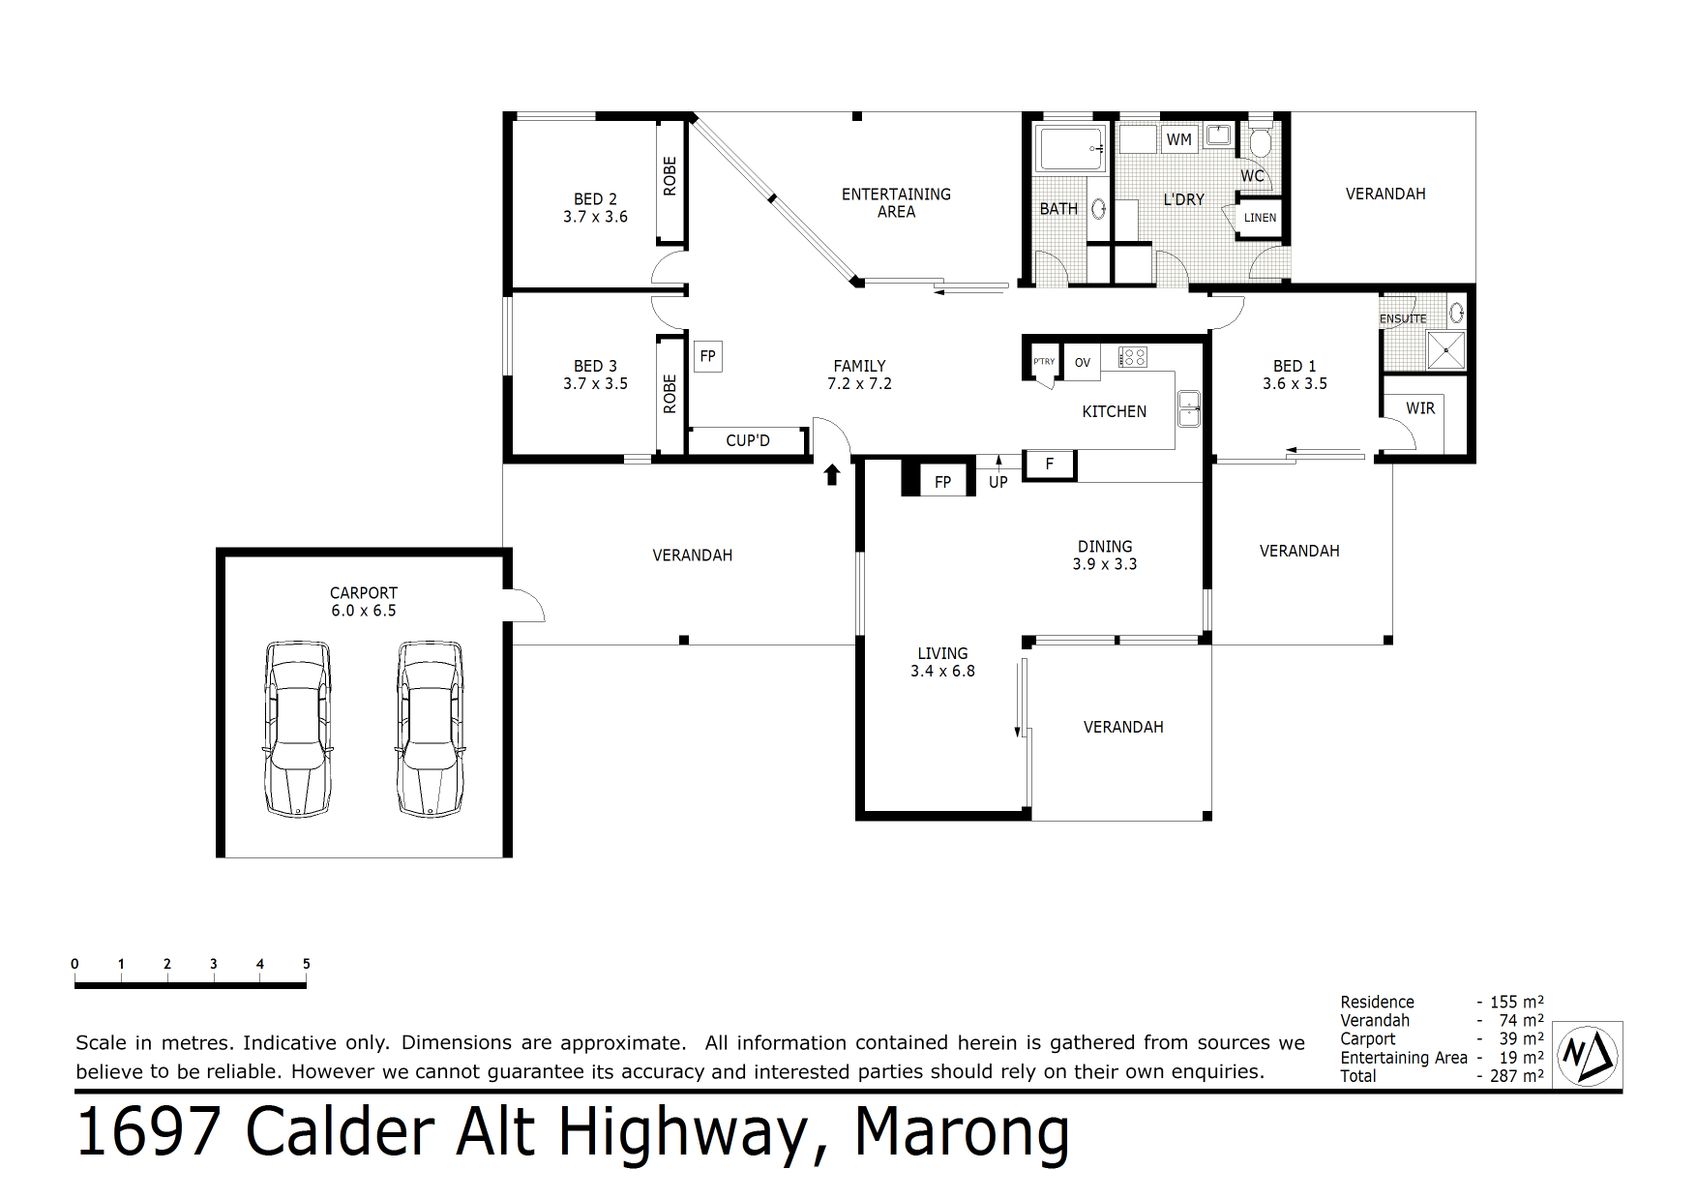 1697 Calder Alt Highway Marong (29 APR 2021) 155sqm (2)